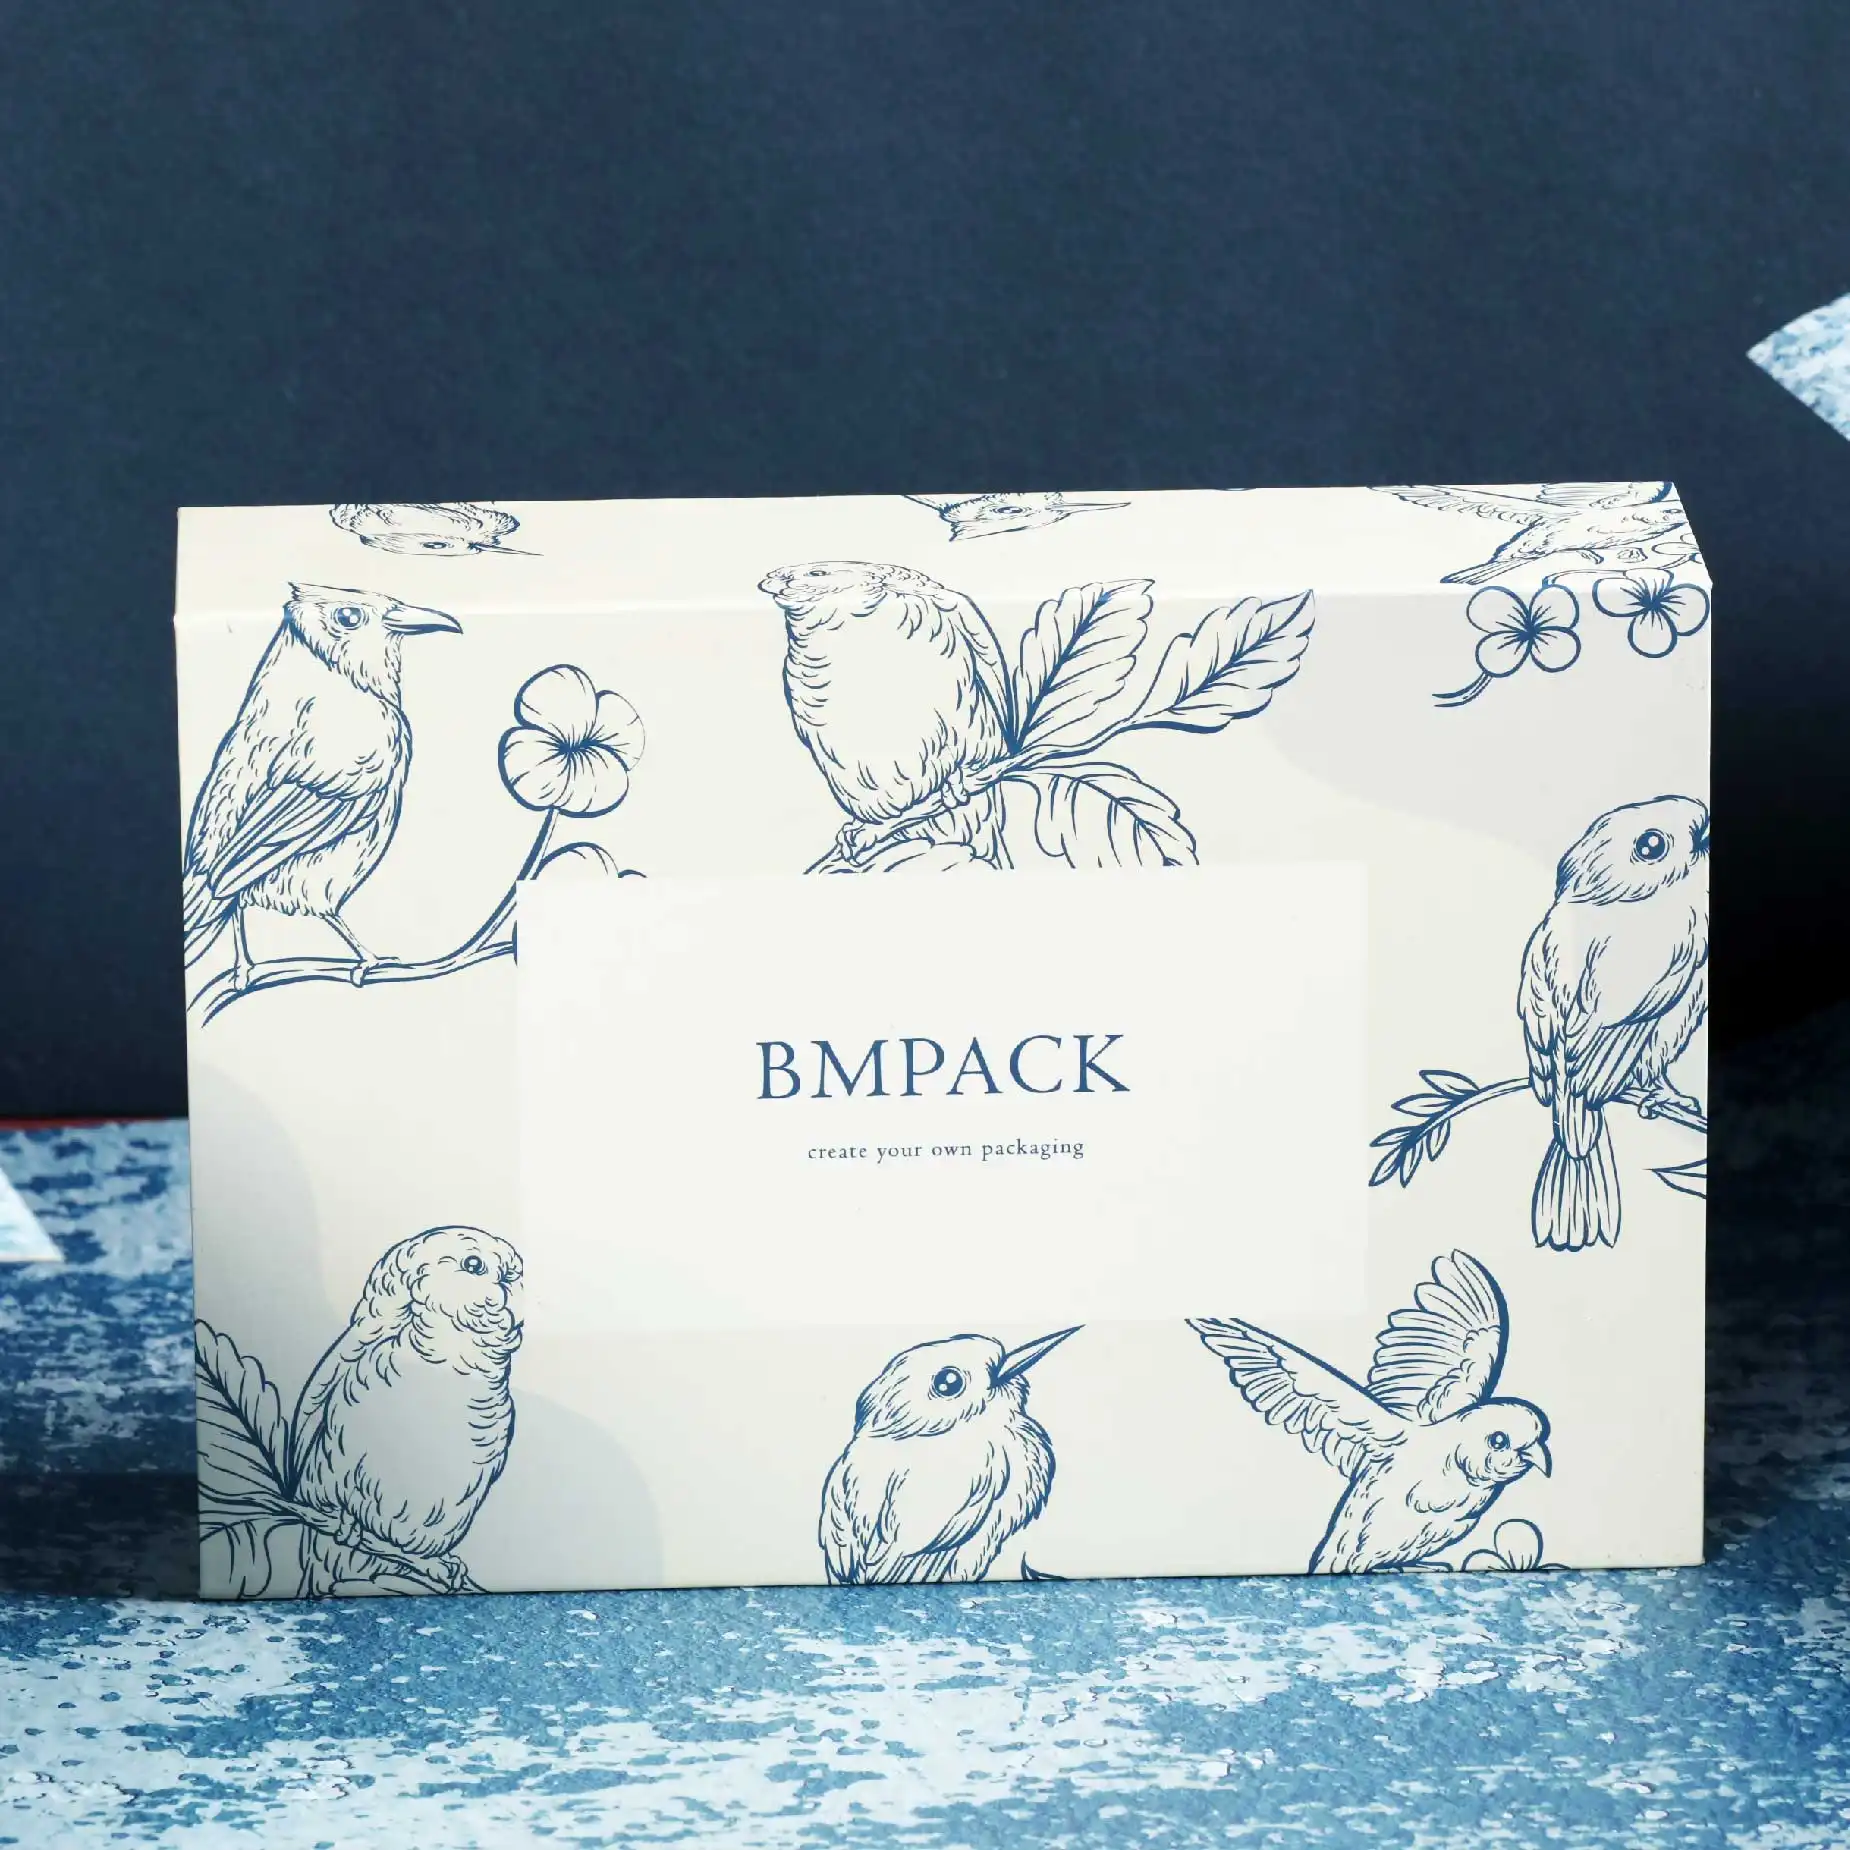 在深藍色的背景下，擺放了一個白色的磁石書型硬盒，盒面印有"BM Pack"的字眼加上深藍色的貓頭鷹圖案作點綴。